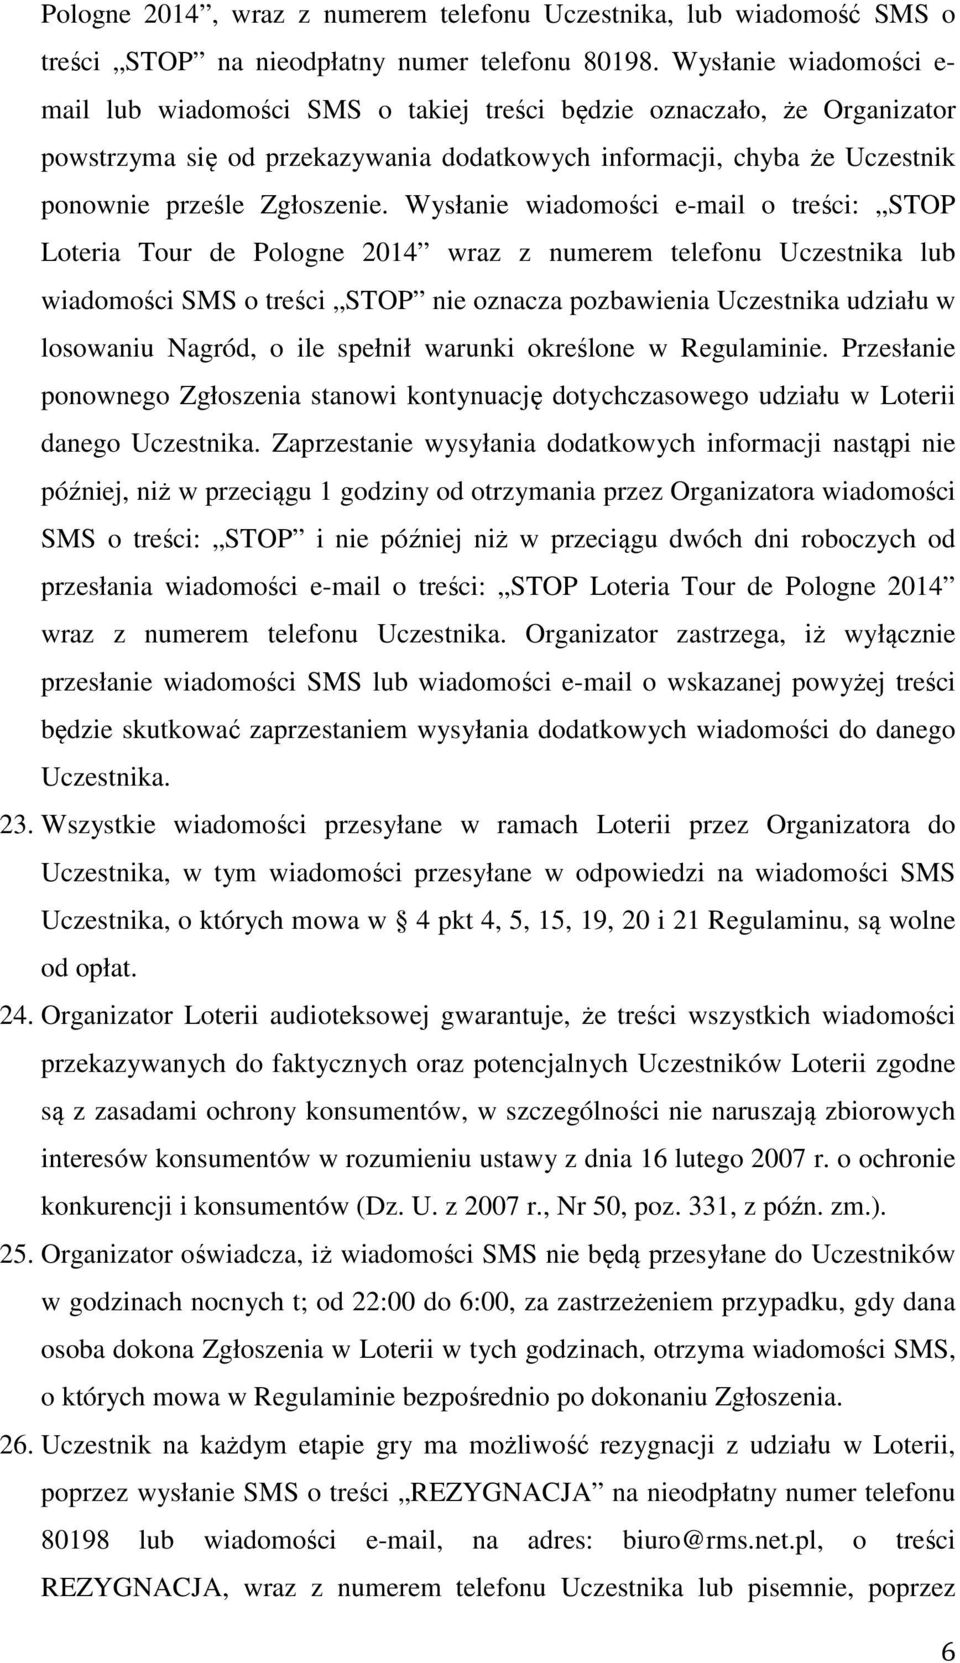 Wysłanie wiadomości e-mail o treści: STOP Loteria Tour de Pologne 2014 wraz z numerem telefonu Uczestnika lub wiadomości SMS o treści STOP nie oznacza pozbawienia Uczestnika udziału w losowaniu